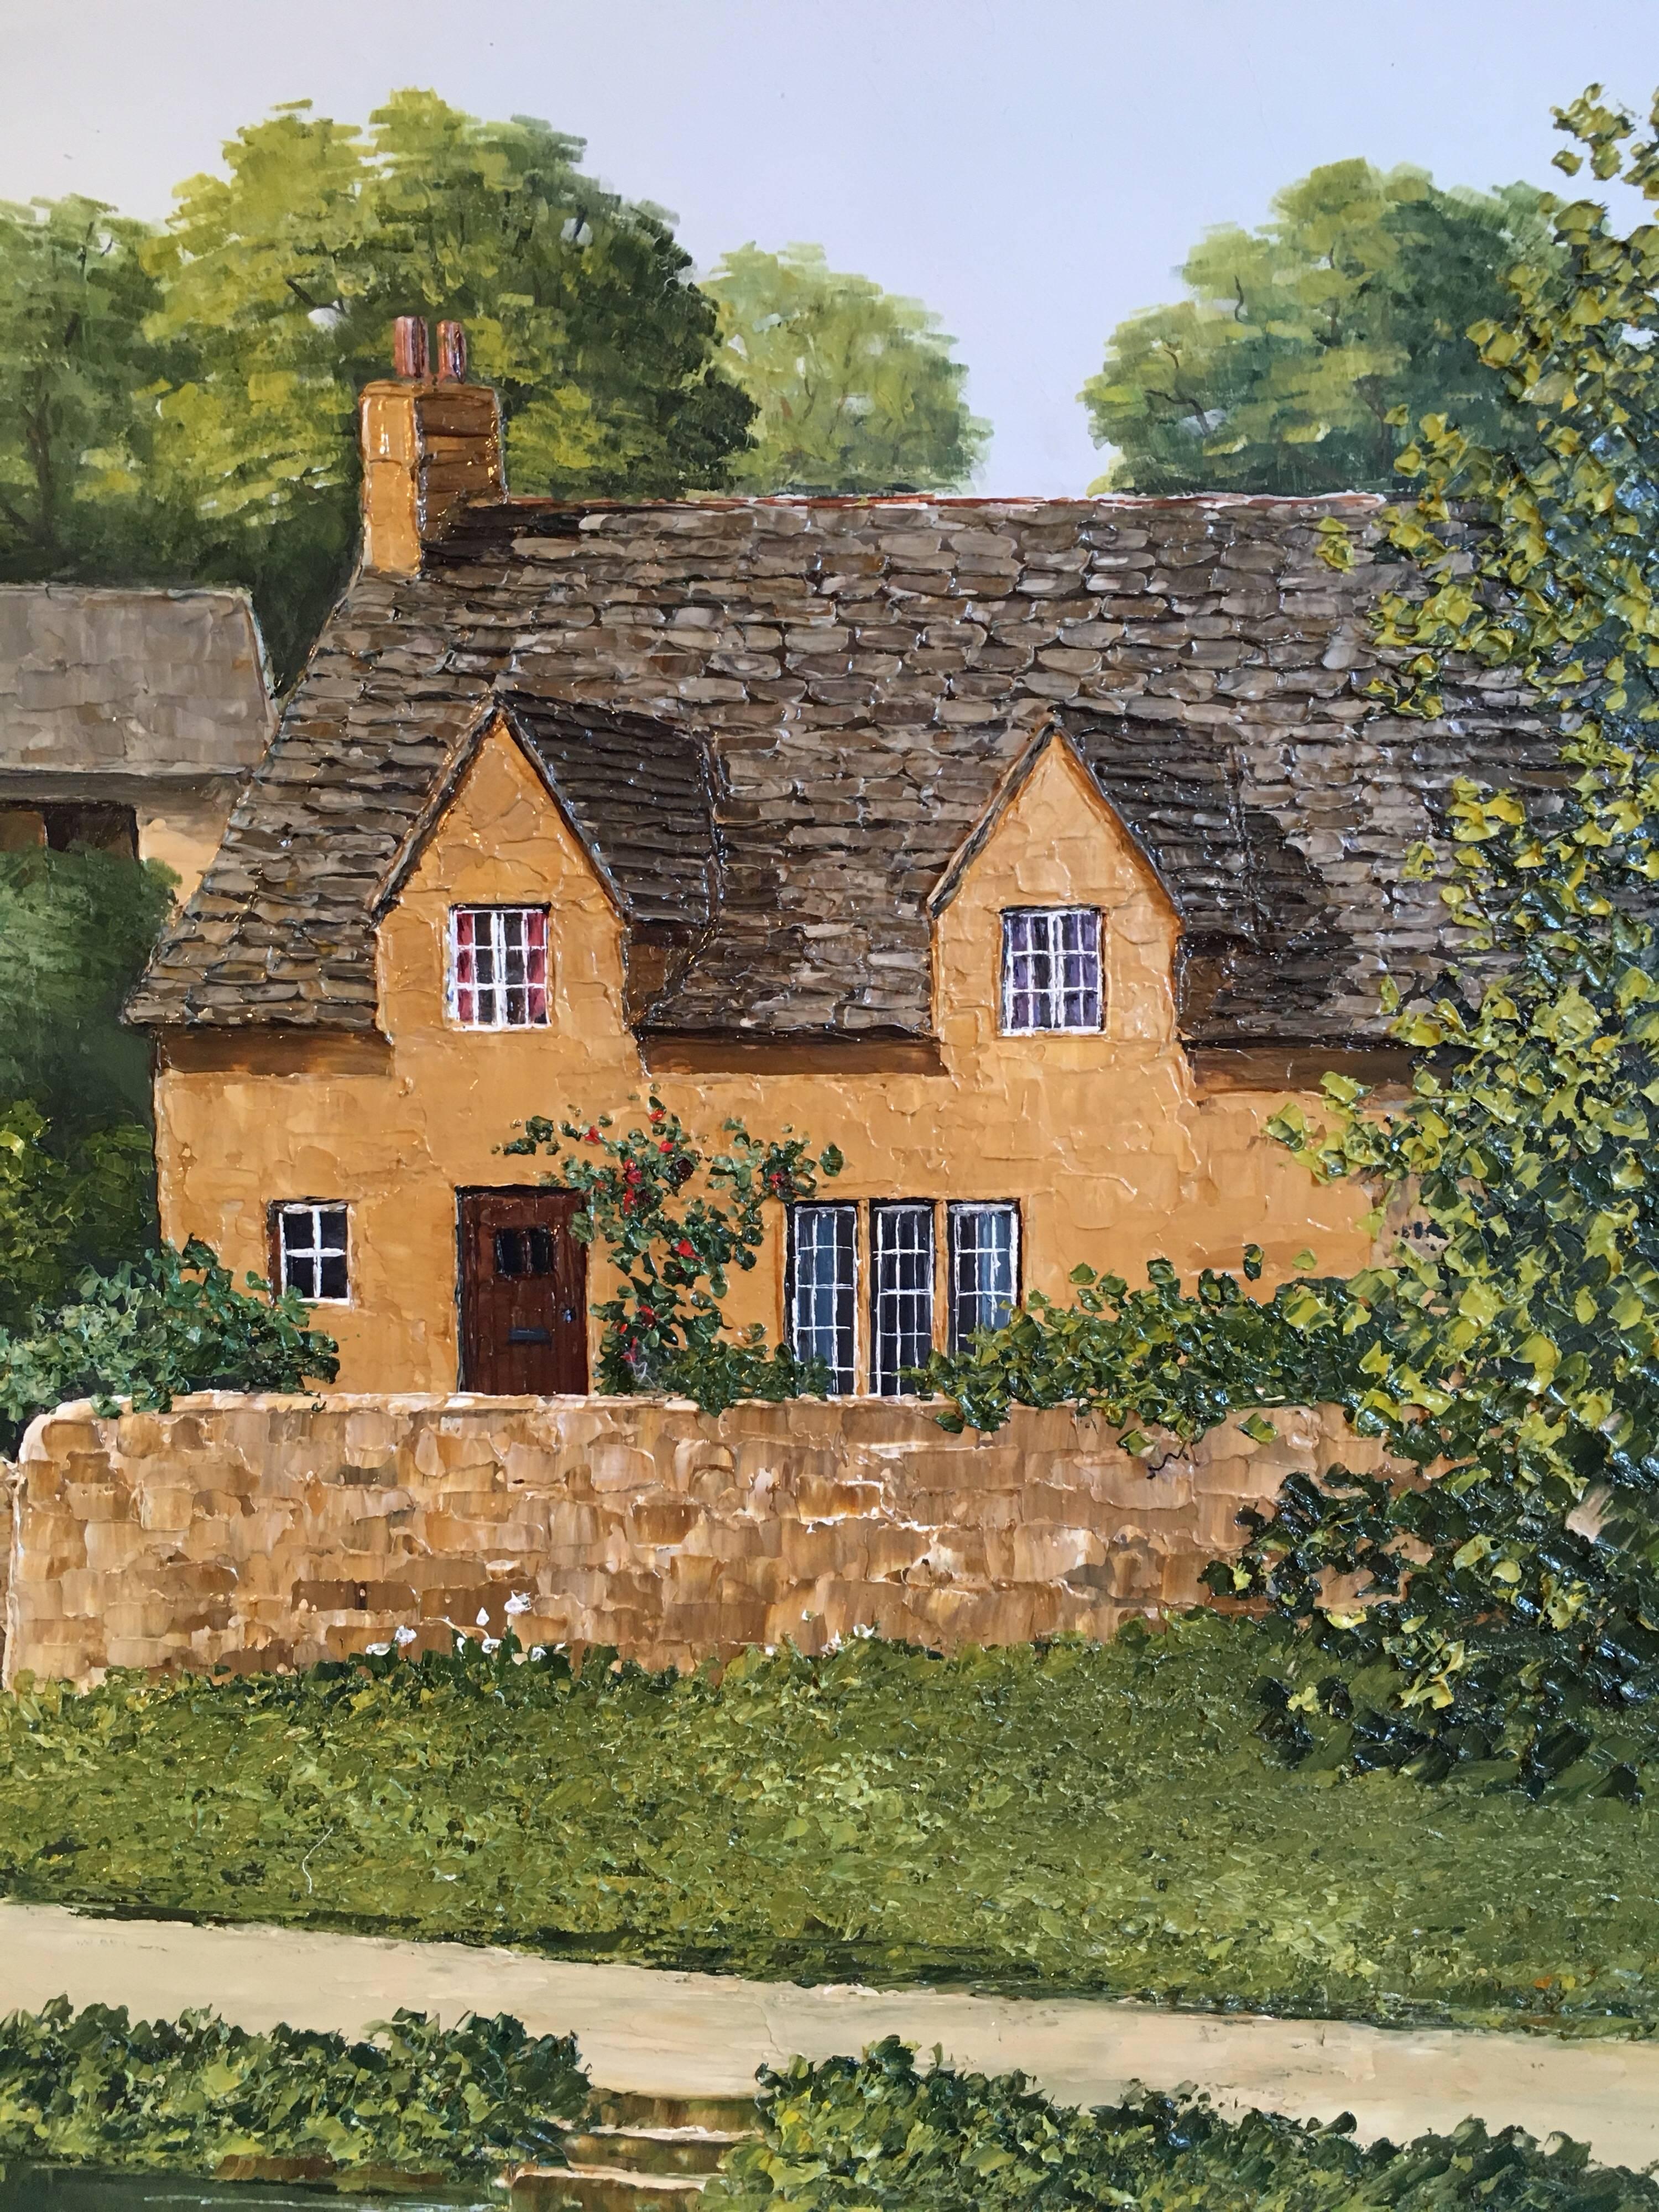 Cotswolds Cottages Riverside English Village Large Landscape Signed Oil - Impressionist Painting by Nick Bradley-Capture